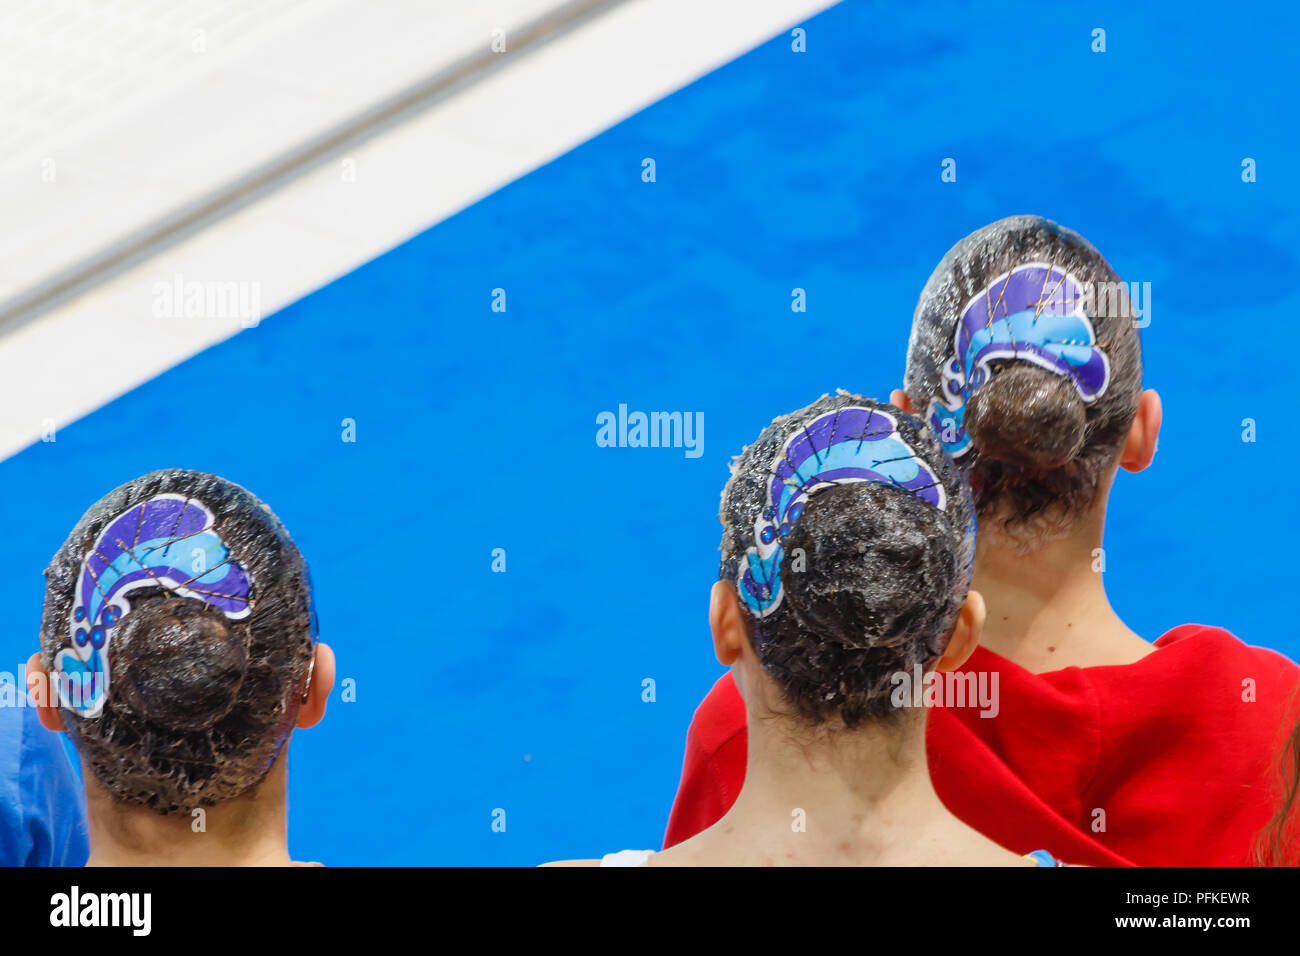 Dettaglio della comparsa di nuoto sincronizzato atleti che è costituito da una miscela di gelatina alimentare e l'acqua sui capelli con accessori per la pettinatura Foto Stock